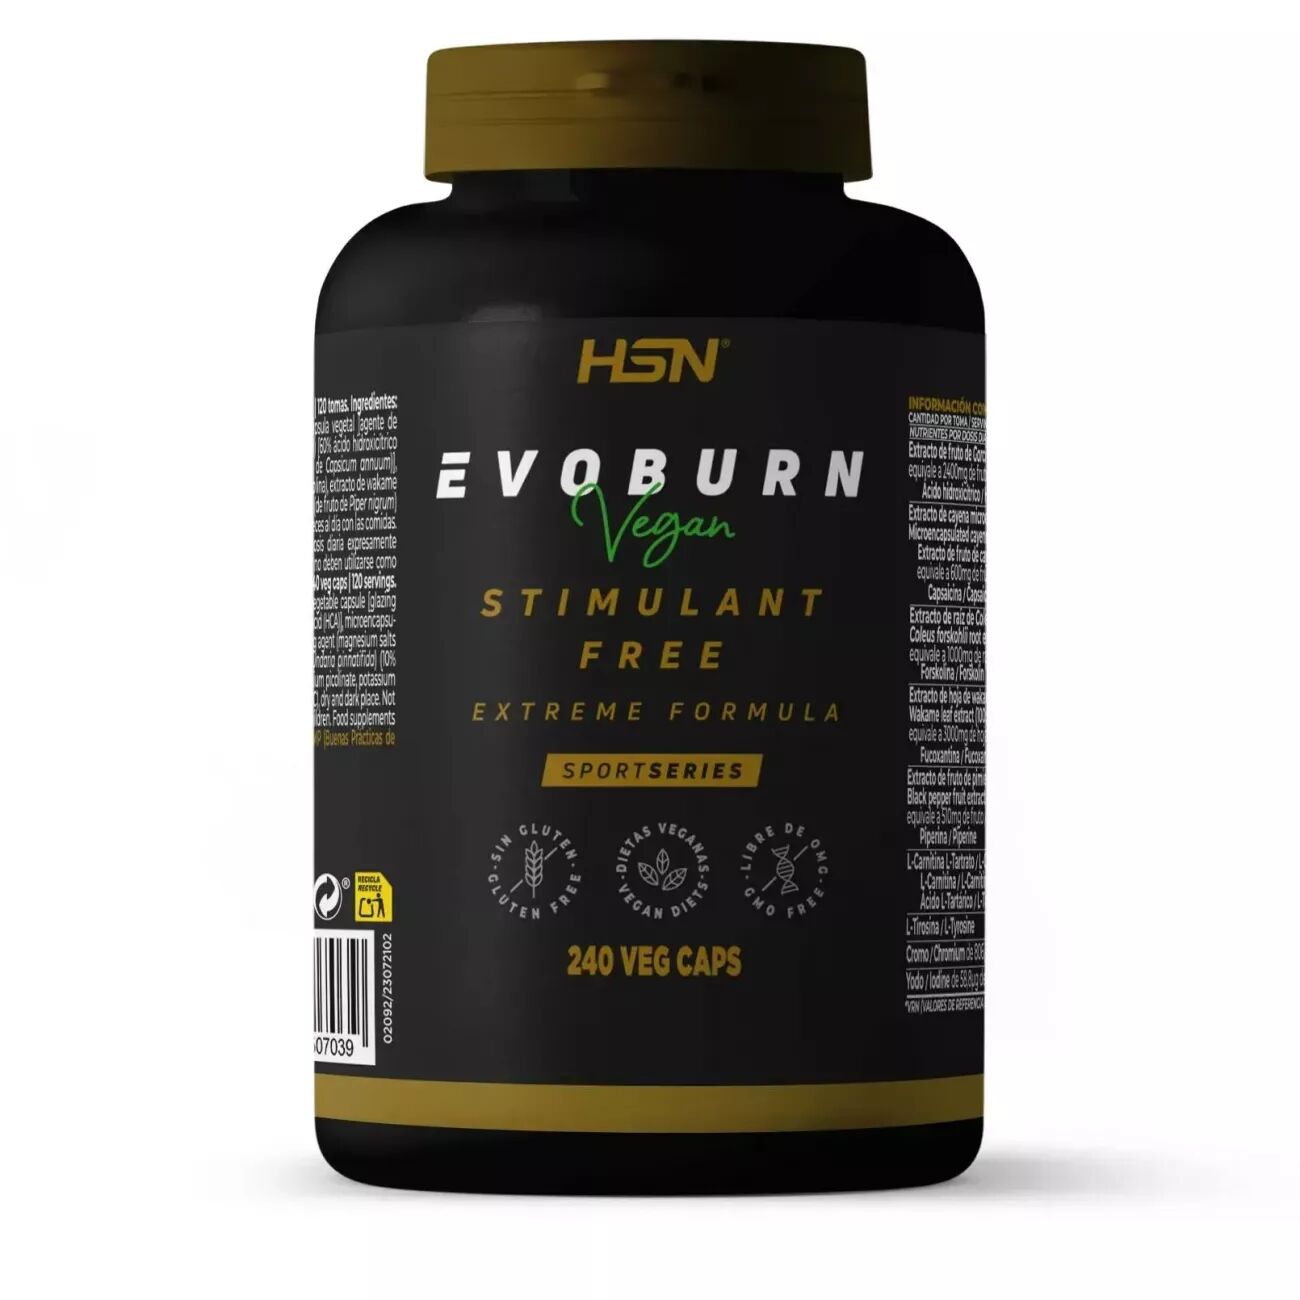 HSN Evoburn (sans stimulants) - 240 veg caps